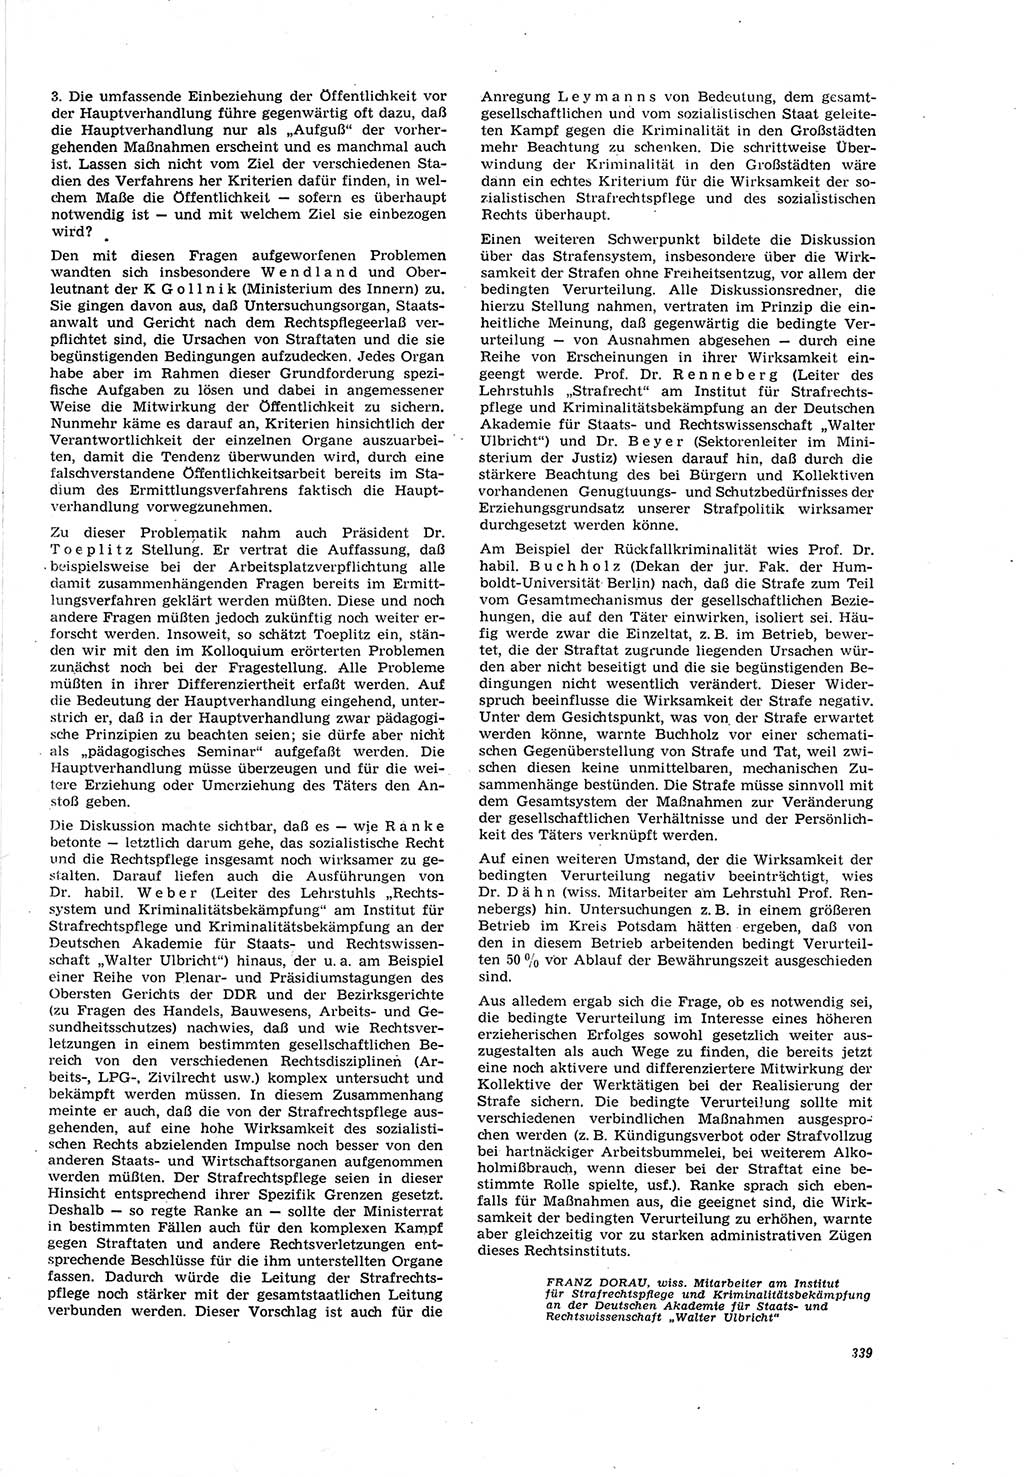 Neue Justiz (NJ), Zeitschrift für Recht und Rechtswissenschaft [Deutsche Demokratische Republik (DDR)], 20. Jahrgang 1966, Seite 339 (NJ DDR 1966, S. 339)